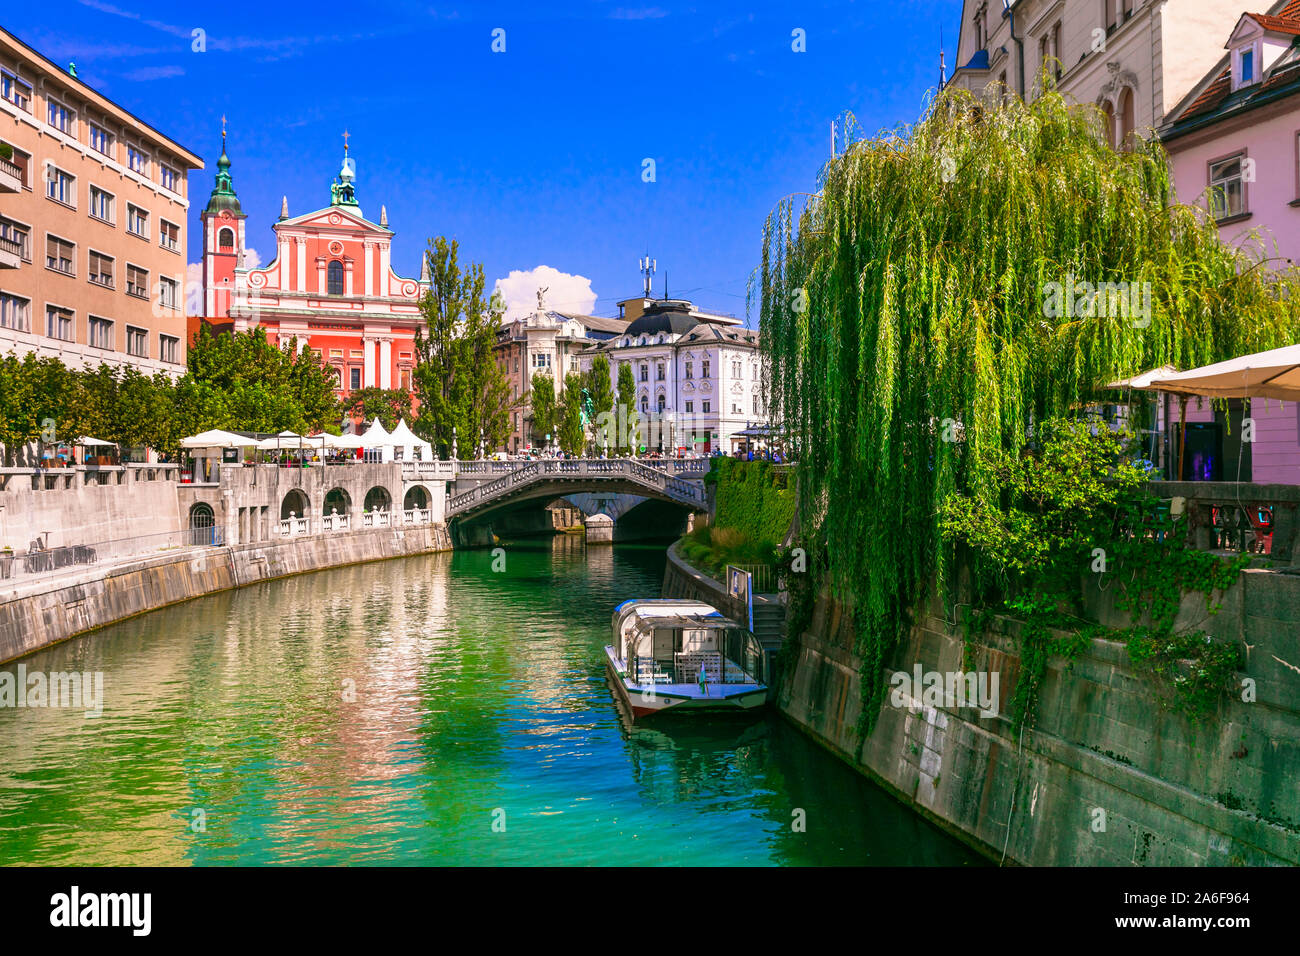 Travel and landmarks of Slovenia - beautiful Ljubljana city capital Stock Photo